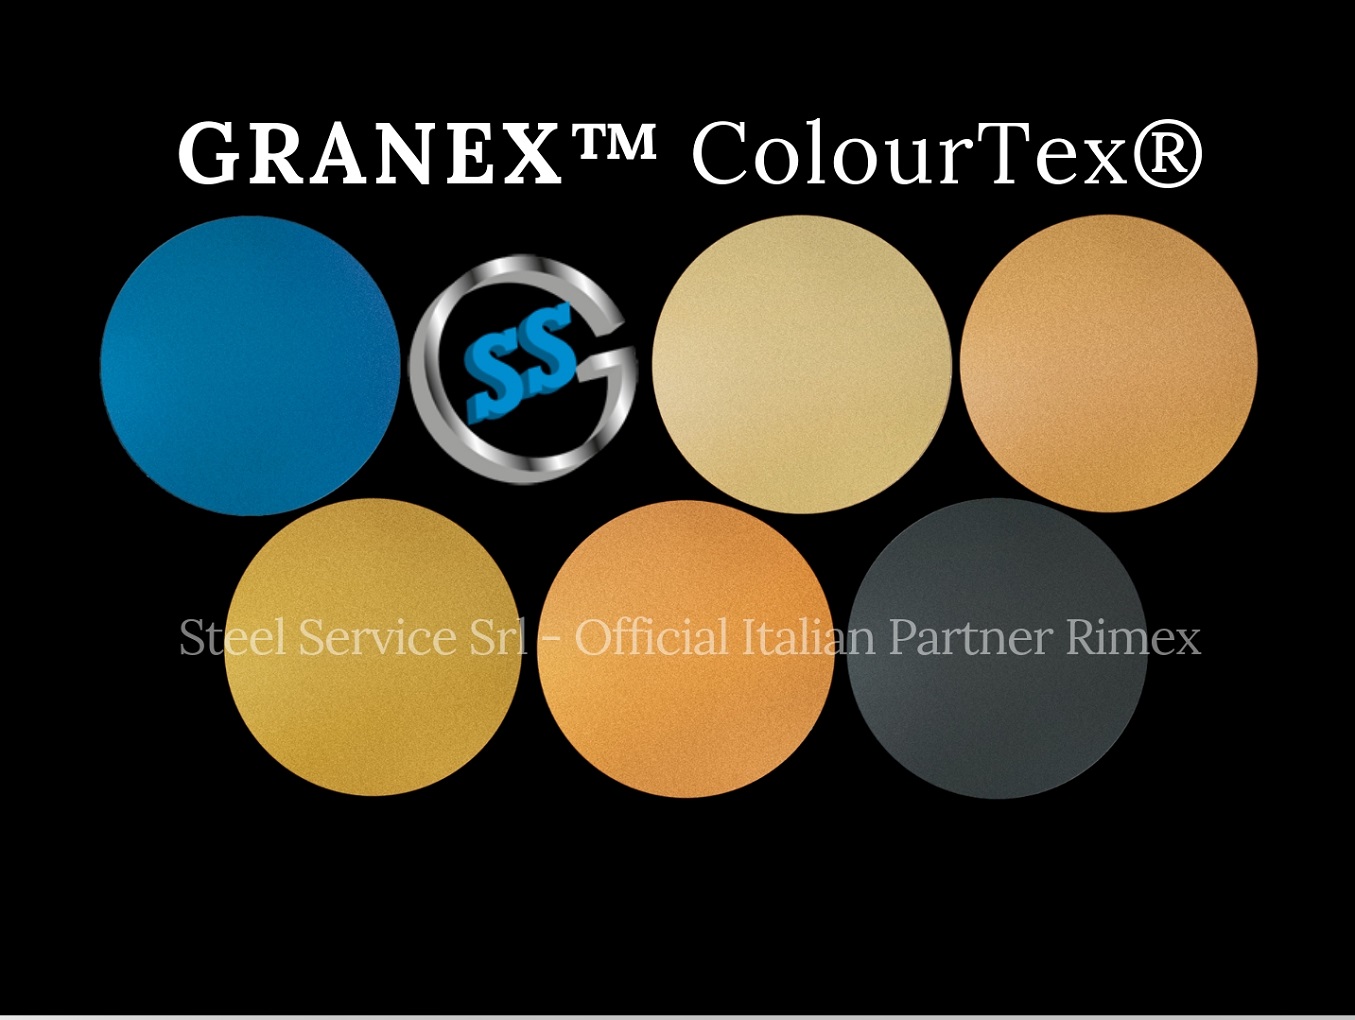 Palette varianti elettro-colorate inox ColourTex delle lamiere inox Granex, inox micropallinato galvanico Granex, inox elettro-colorato micropallinato